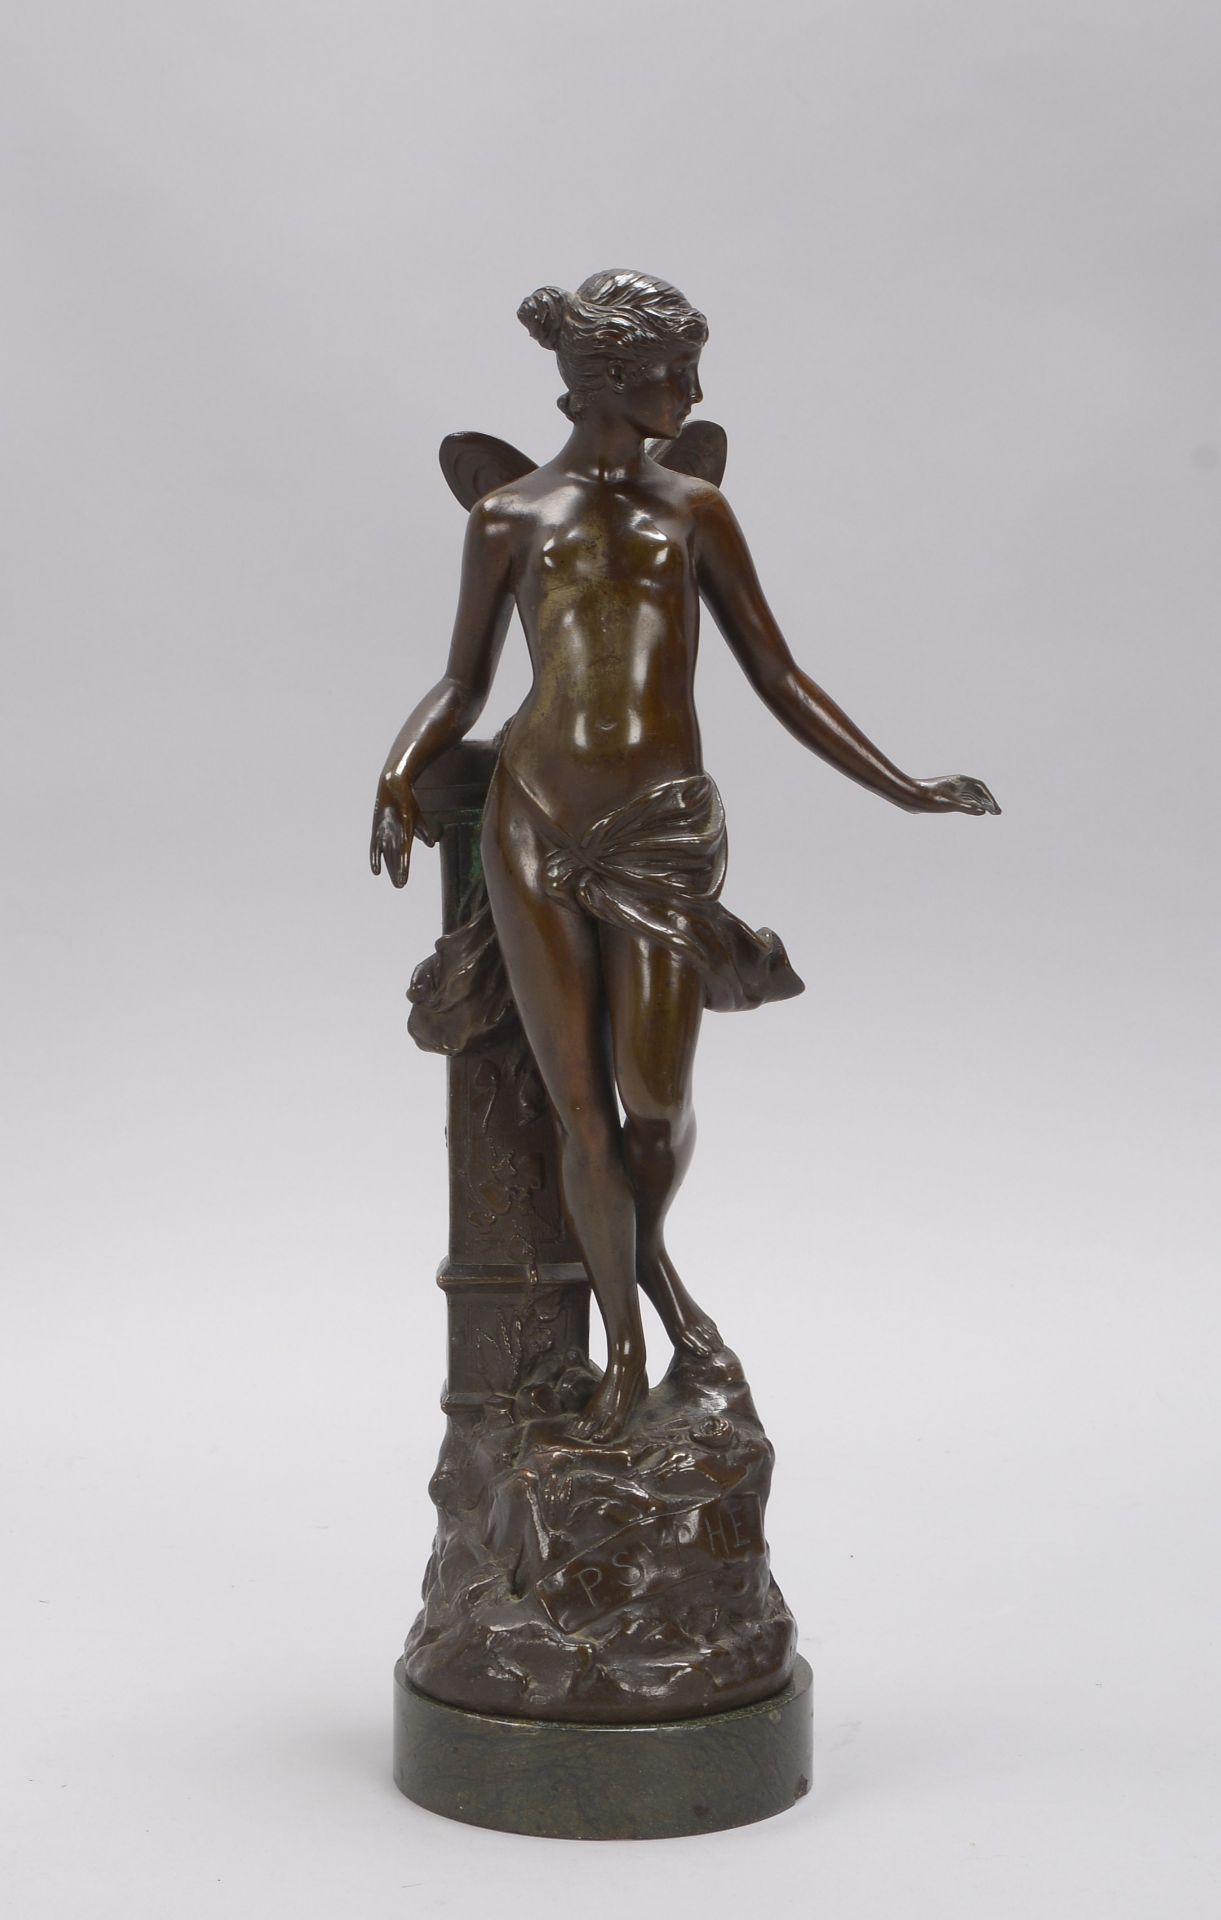 Skulptur, 'Psyche', Figur mit bronzierter Metallummantelung, signiert 'A. Mayer', auf Marmorsockel; 